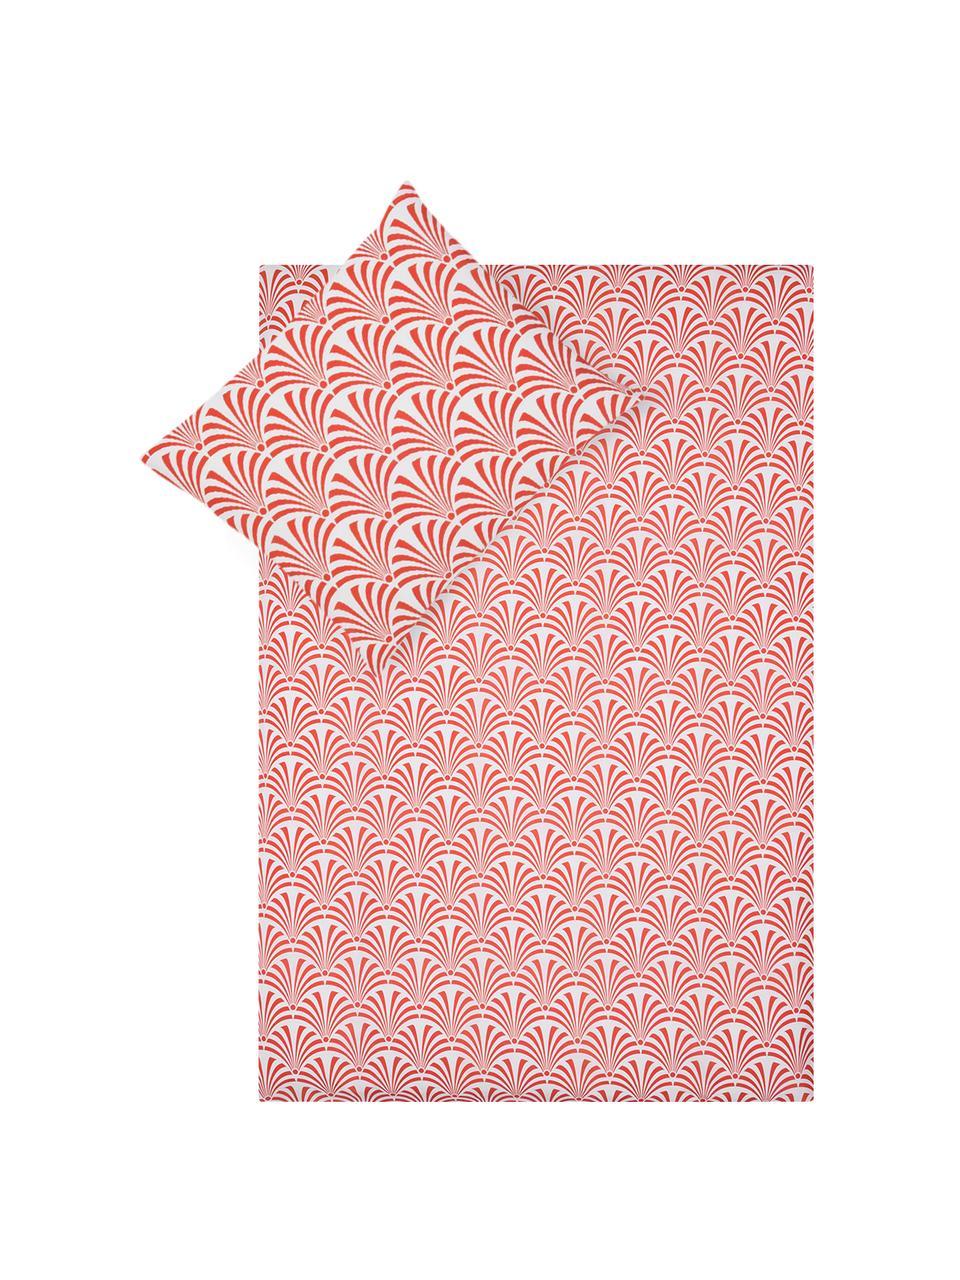 Dubbelzijdig dekbedovertrek Crone, Katoen, Bovenzijde: rood, wit. Onderzijde: wit, 140 x 200 cm